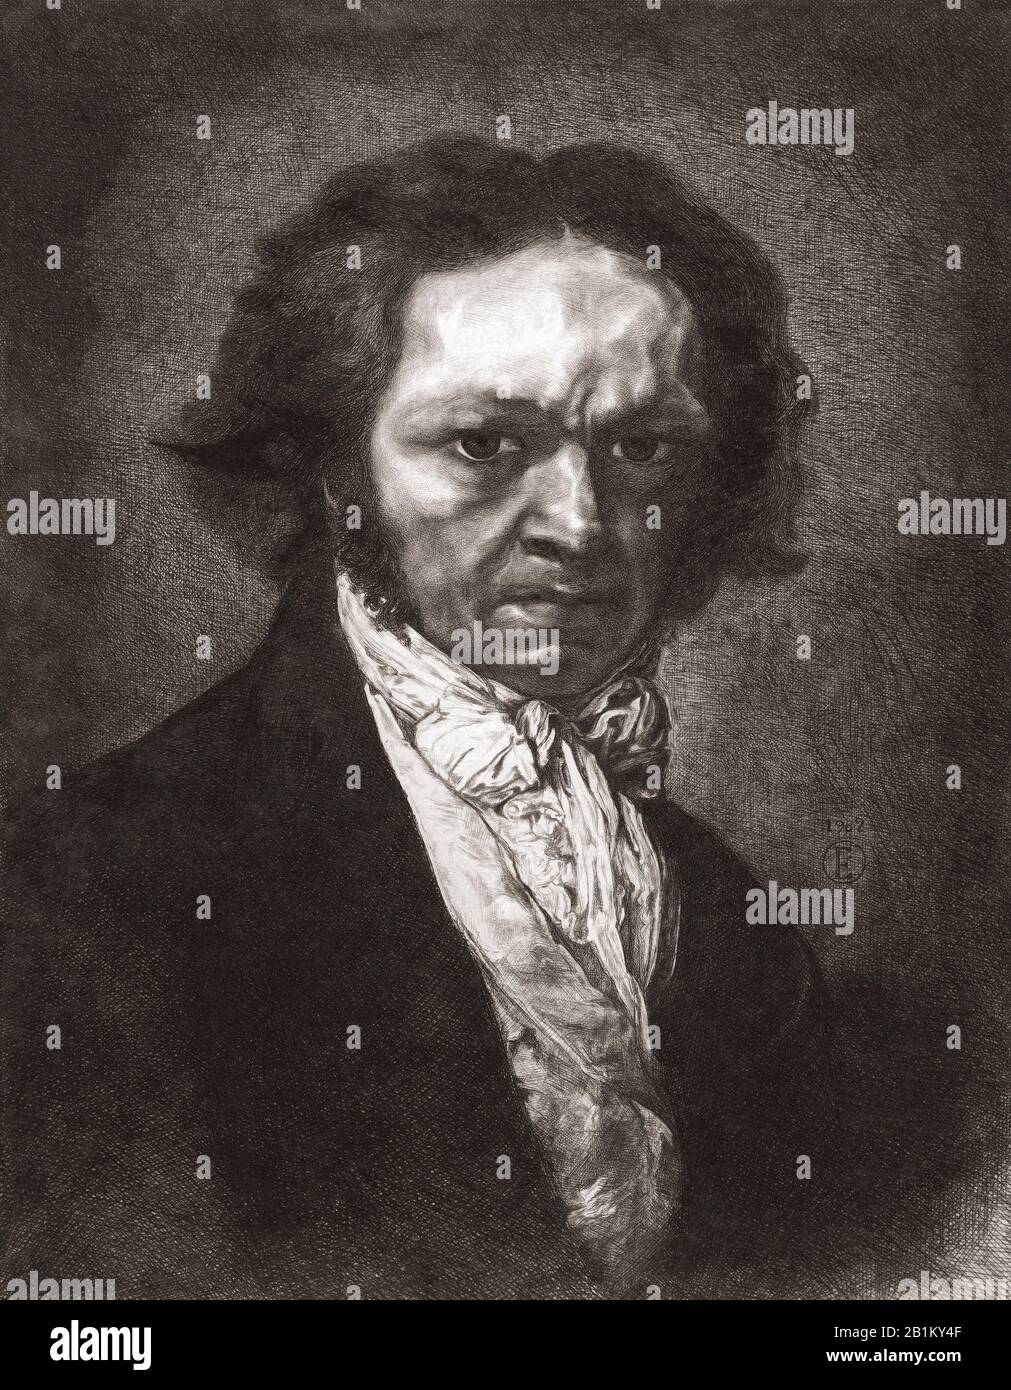 Retrato de Francisco de Goya. Francisco José de Goya y Lucientes, 1746 - 1828. Pintor y grabador español. Después de un grabado del artista español Rogelio de Egusquiza y Barrena, 1845 – 1915. Foto de stock